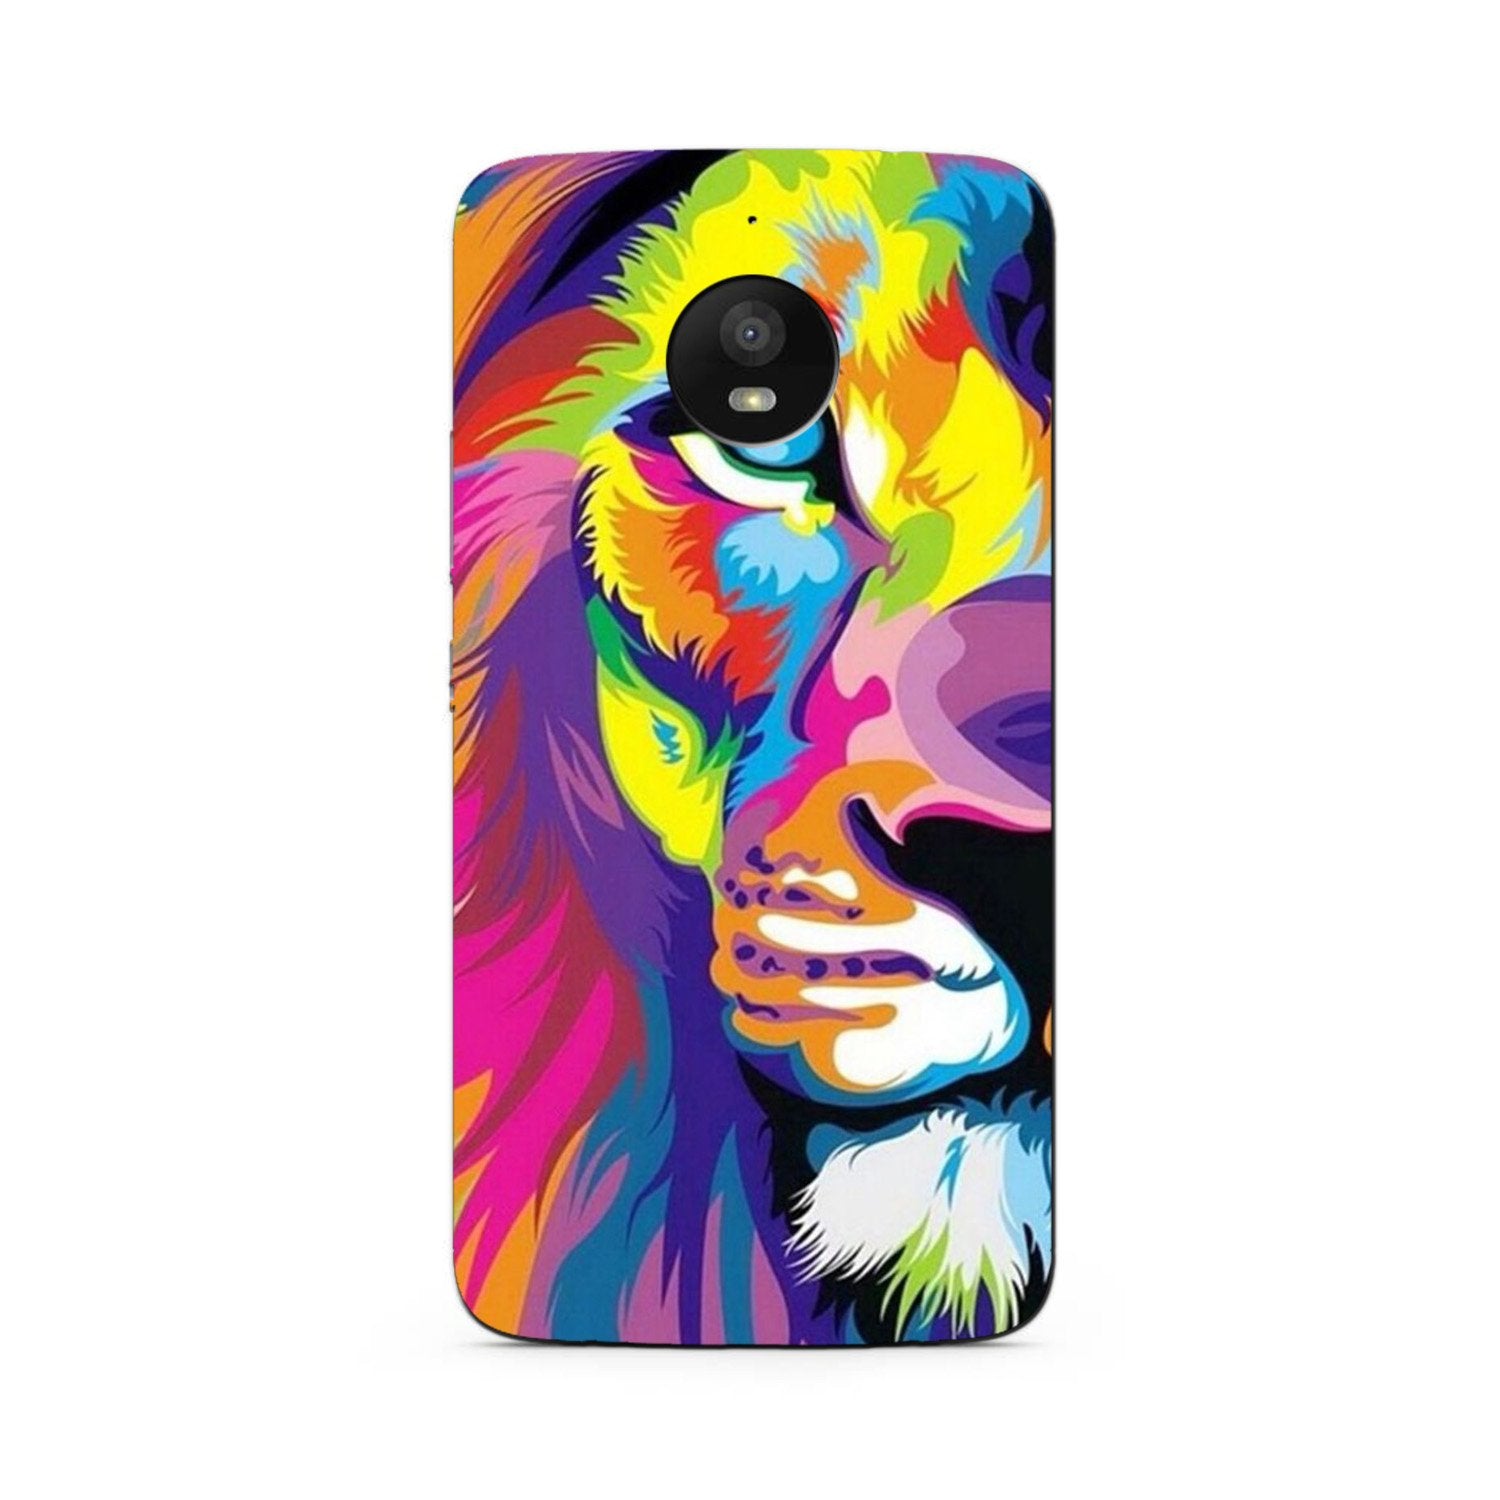 Colorful Lion Case for Moto G5s Plus  (Design - 110)